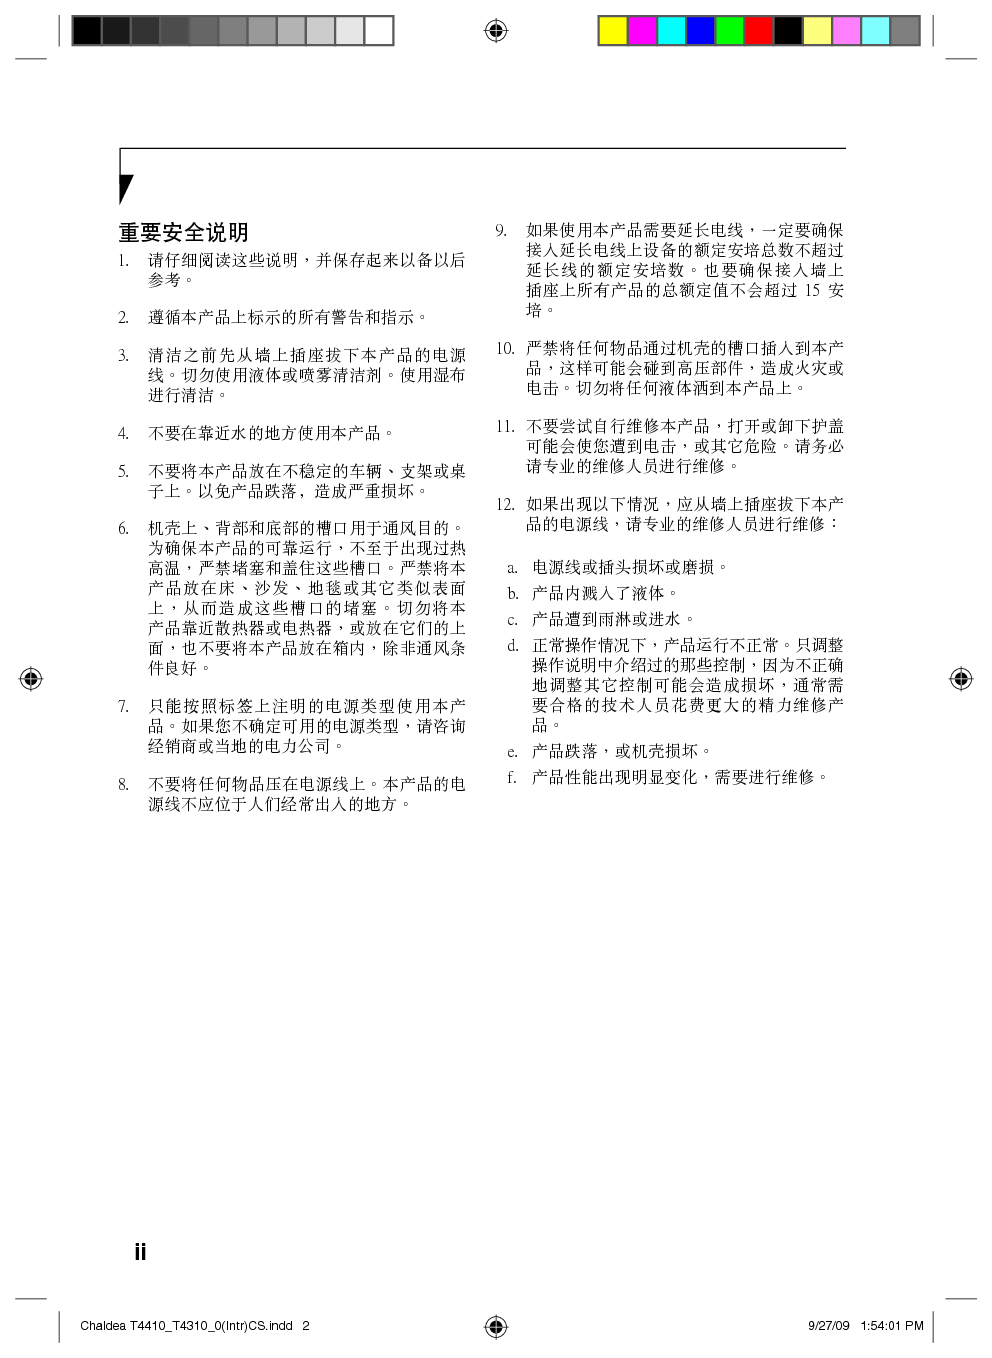 富士通 Fujitsu Lifebook T4310 使用说明书 第1页